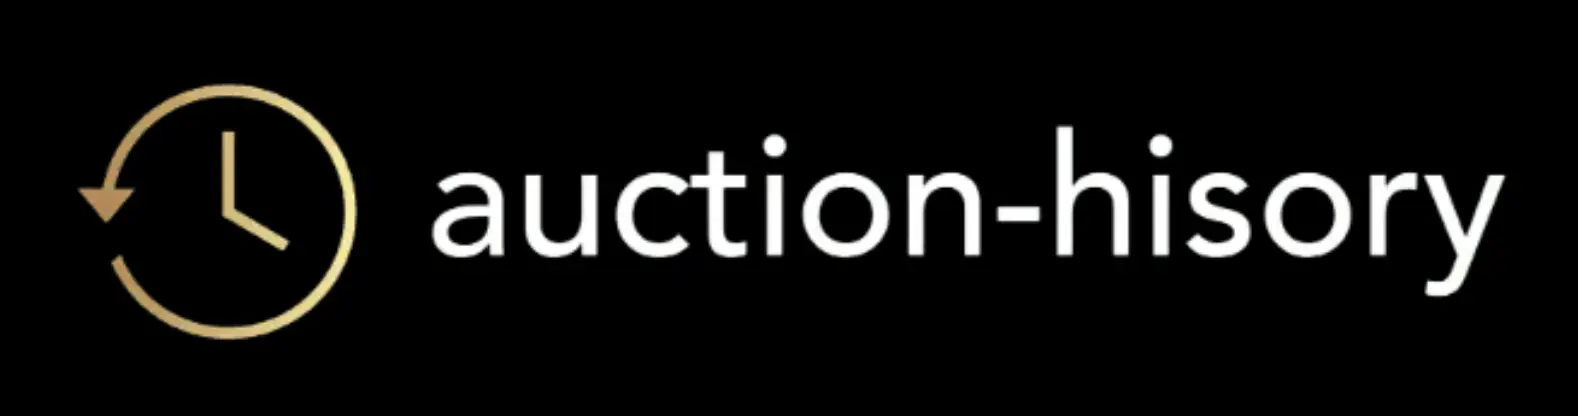 auction-history.com website logo